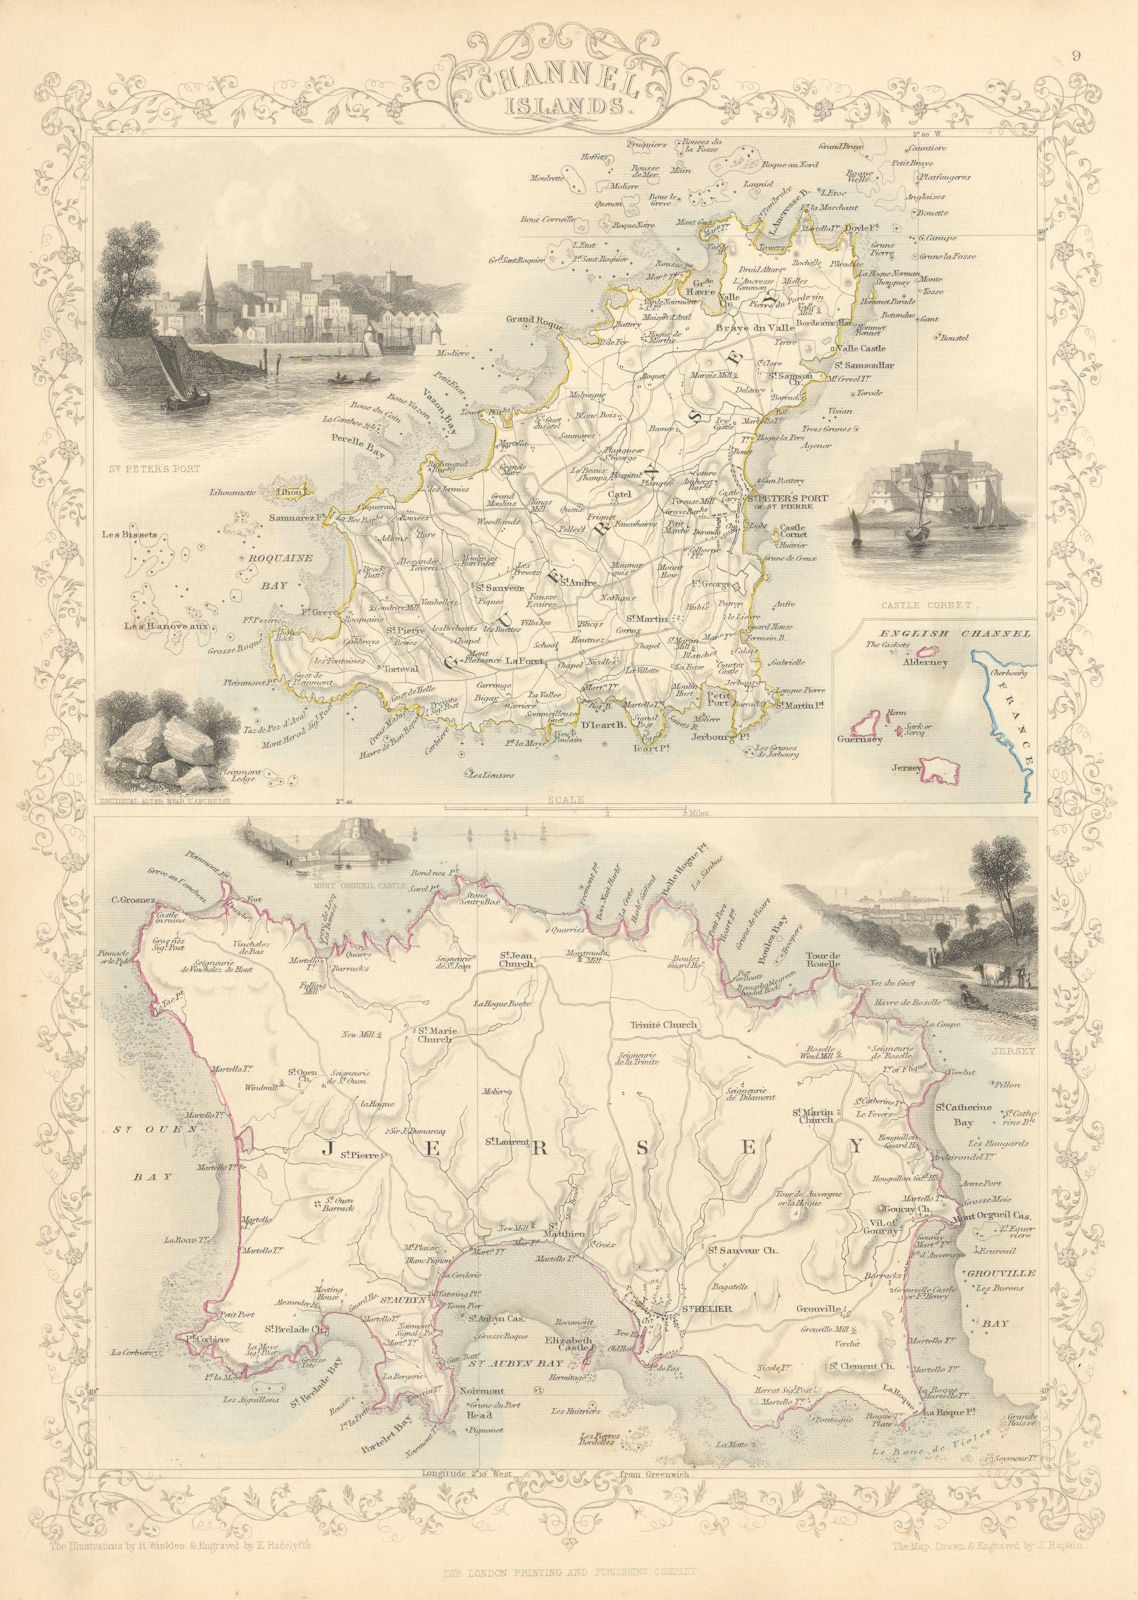 Associate Product CHANNEL ISLANDS. St Peter Port view. Jersey & Guernsey. TALLIS & RAPKIN 1851 map